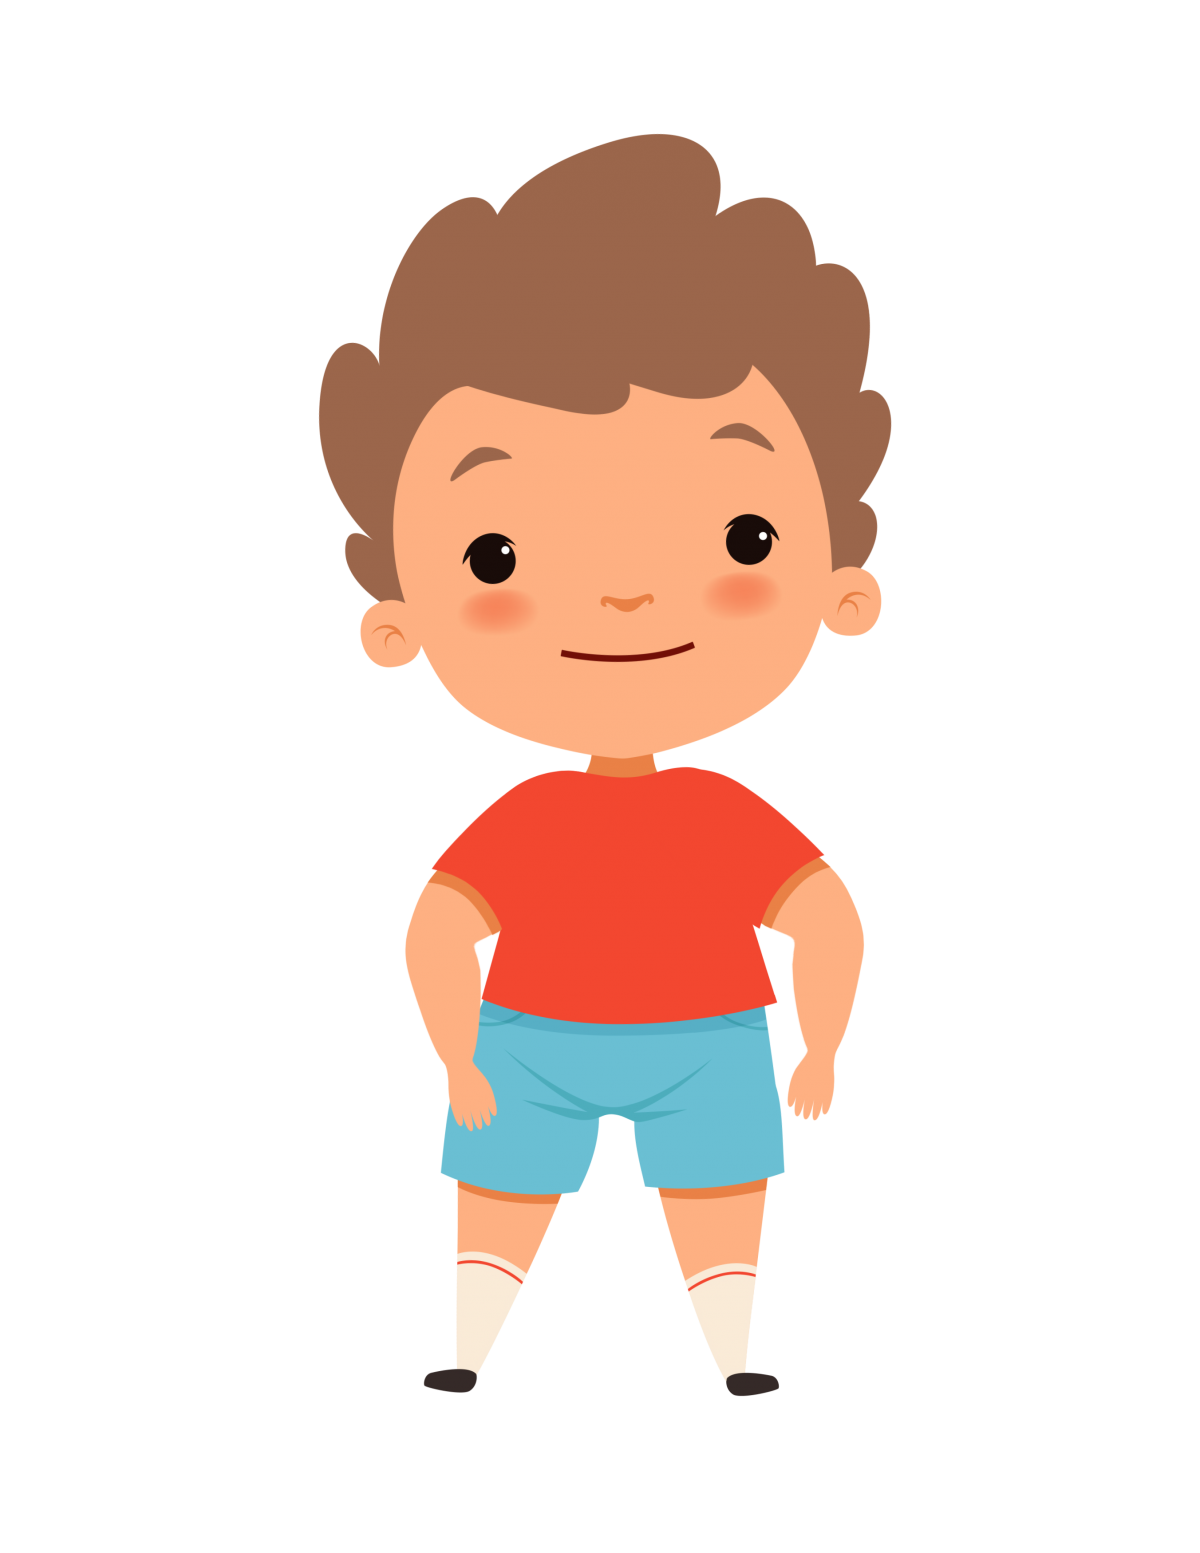 Jakob, kleiner Junge in blauer short und rotem T-shirt mit braunen Haaren